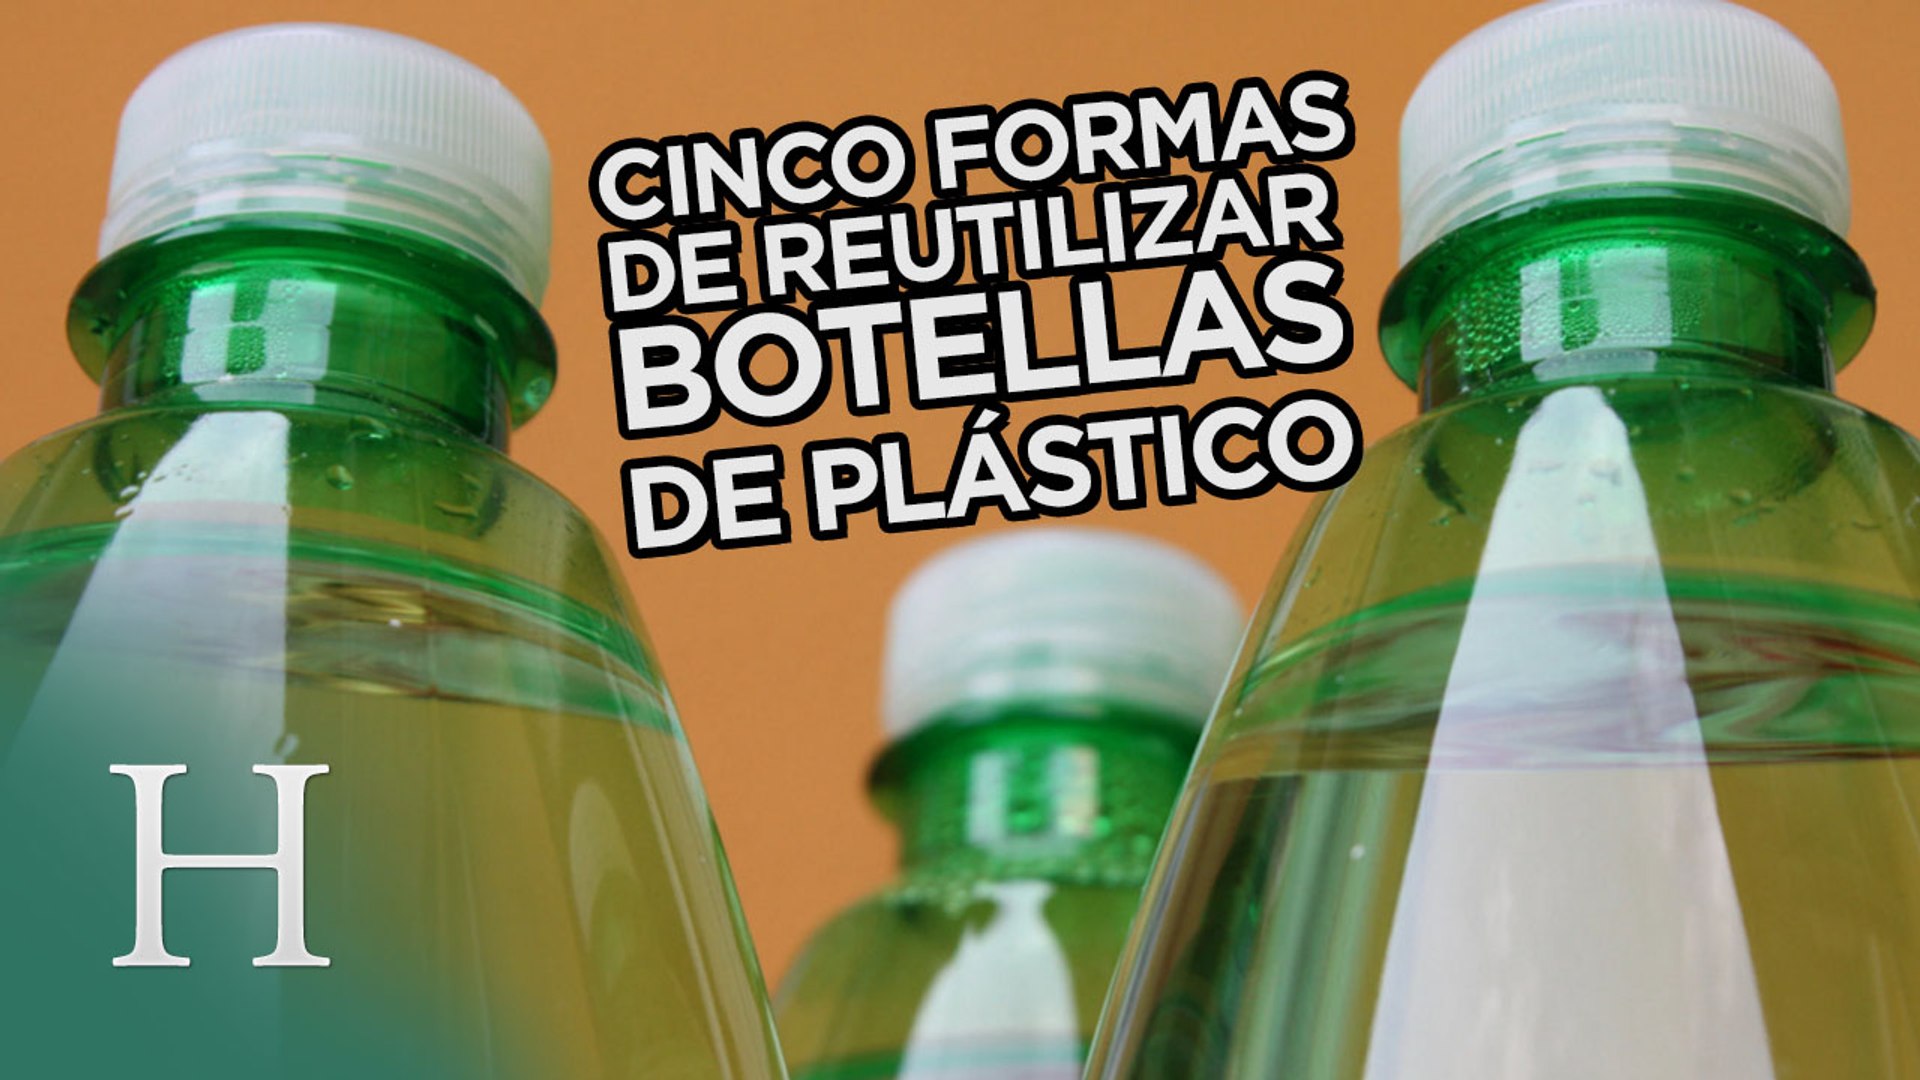 Cinco formas curiosas de reutilizar botellas de plástico - Vídeo Dailymotion